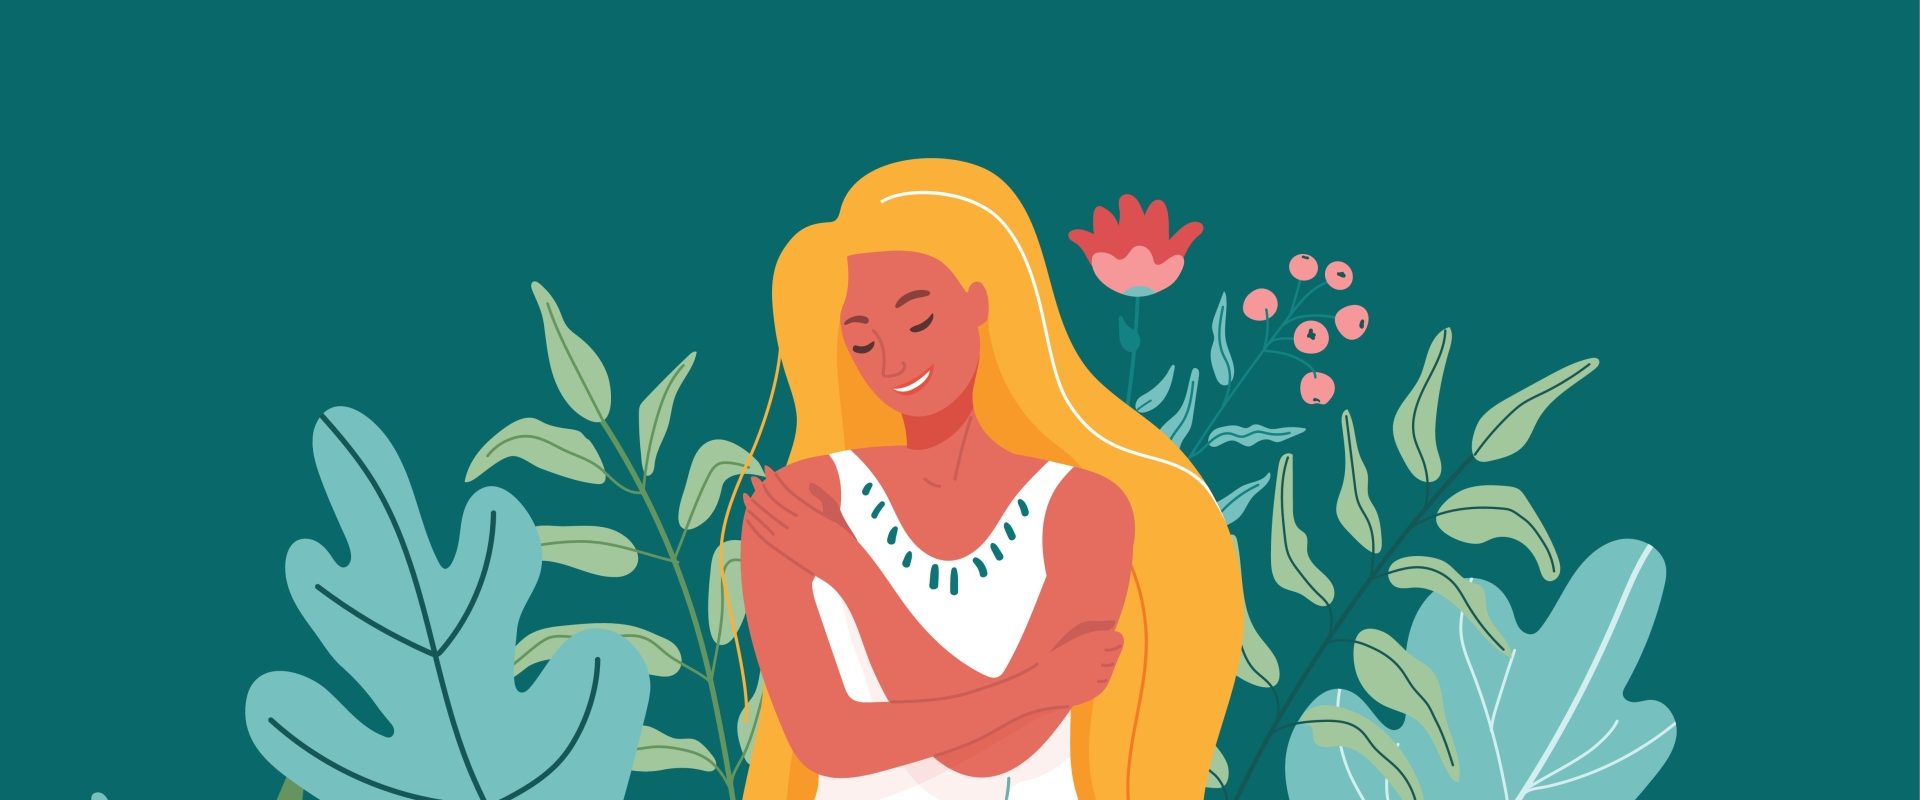 Samoakceptacja - jak ją osiągnąć? Ilustracja przedstawiająca przytulającą siebie kobietę w otoczeniu roślin na zielonym tle.